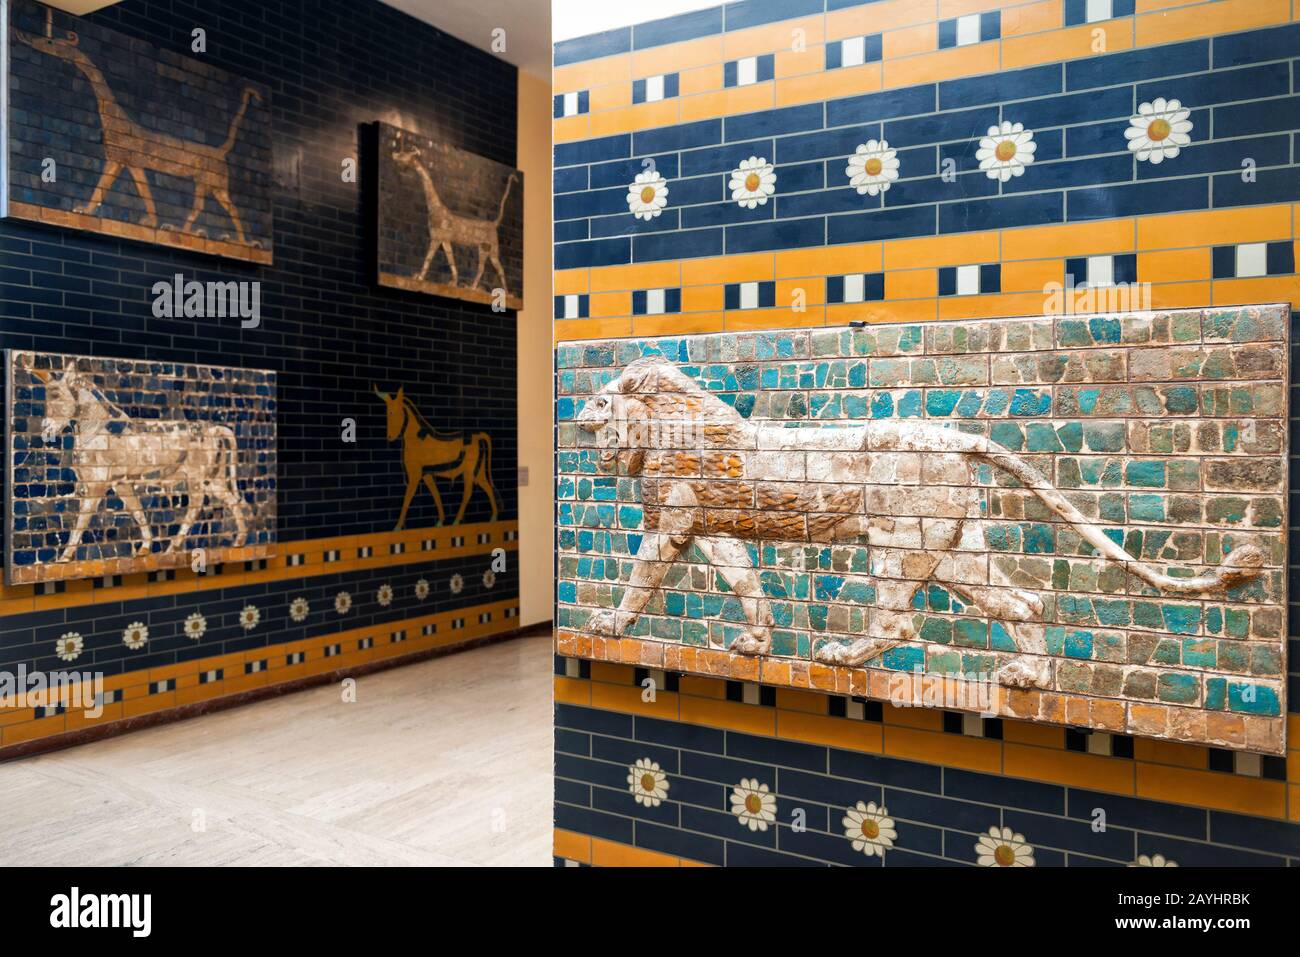 Istanbul - 25 MAI 2013 : détail de la porte d'Ishtar babylonienne avec un lion au Musée d'archéologie d'Istanbul, Turquie. La célèbre porte a été construite à Babylone Banque D'Images